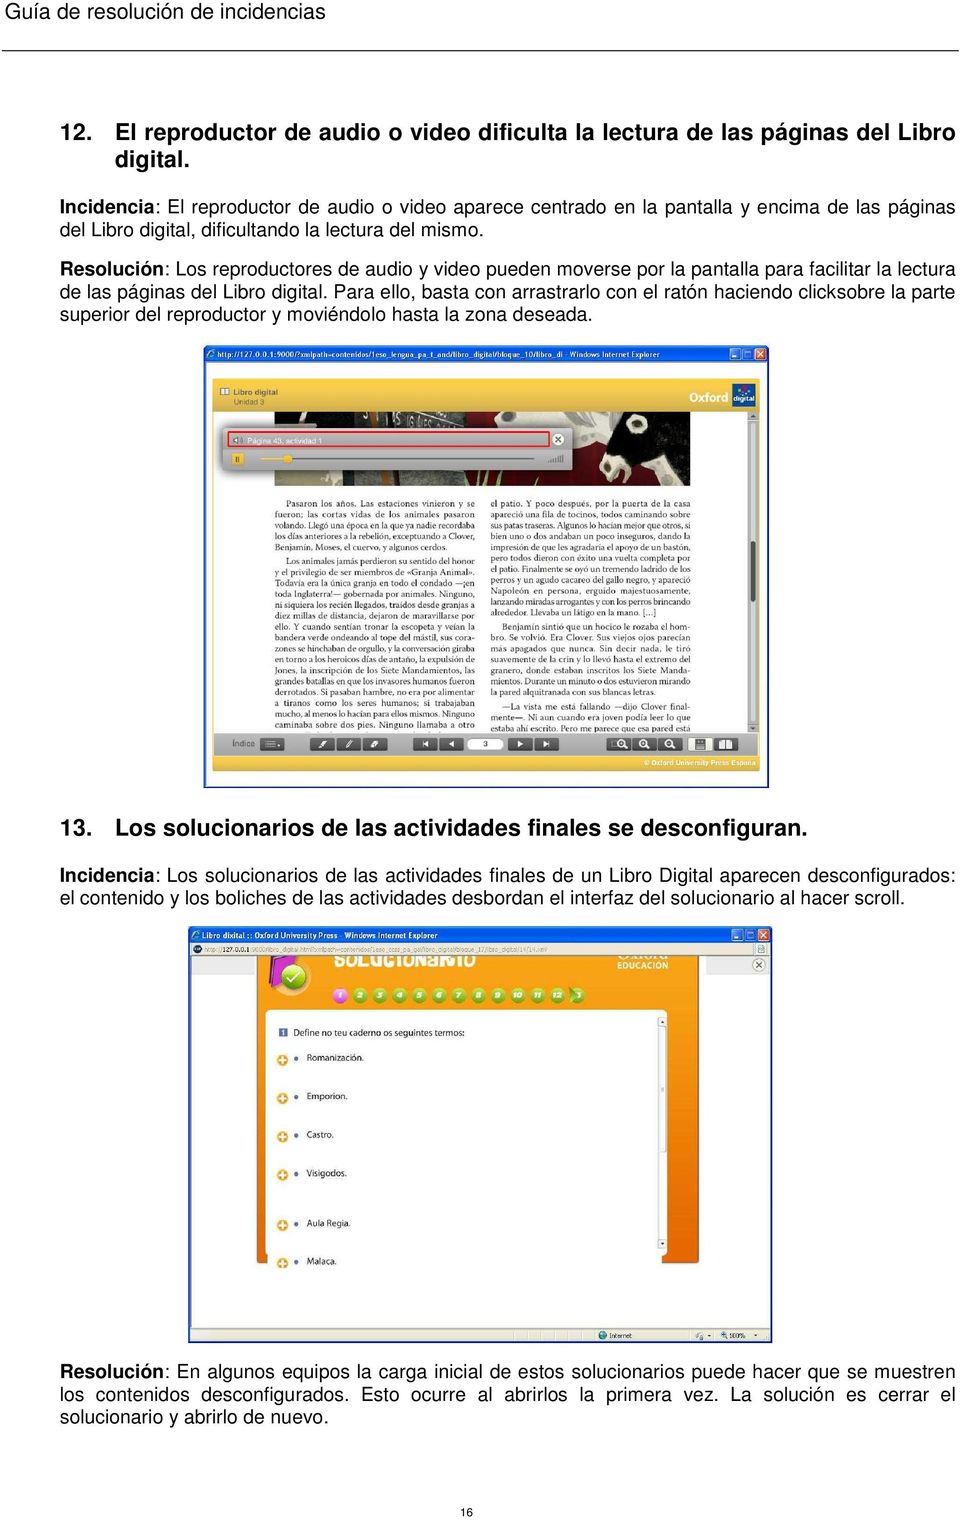 Resolución: Los reproductores de audio y video pueden moverse por la pantalla para facilitar la lectura de las páginas del Libro digital.